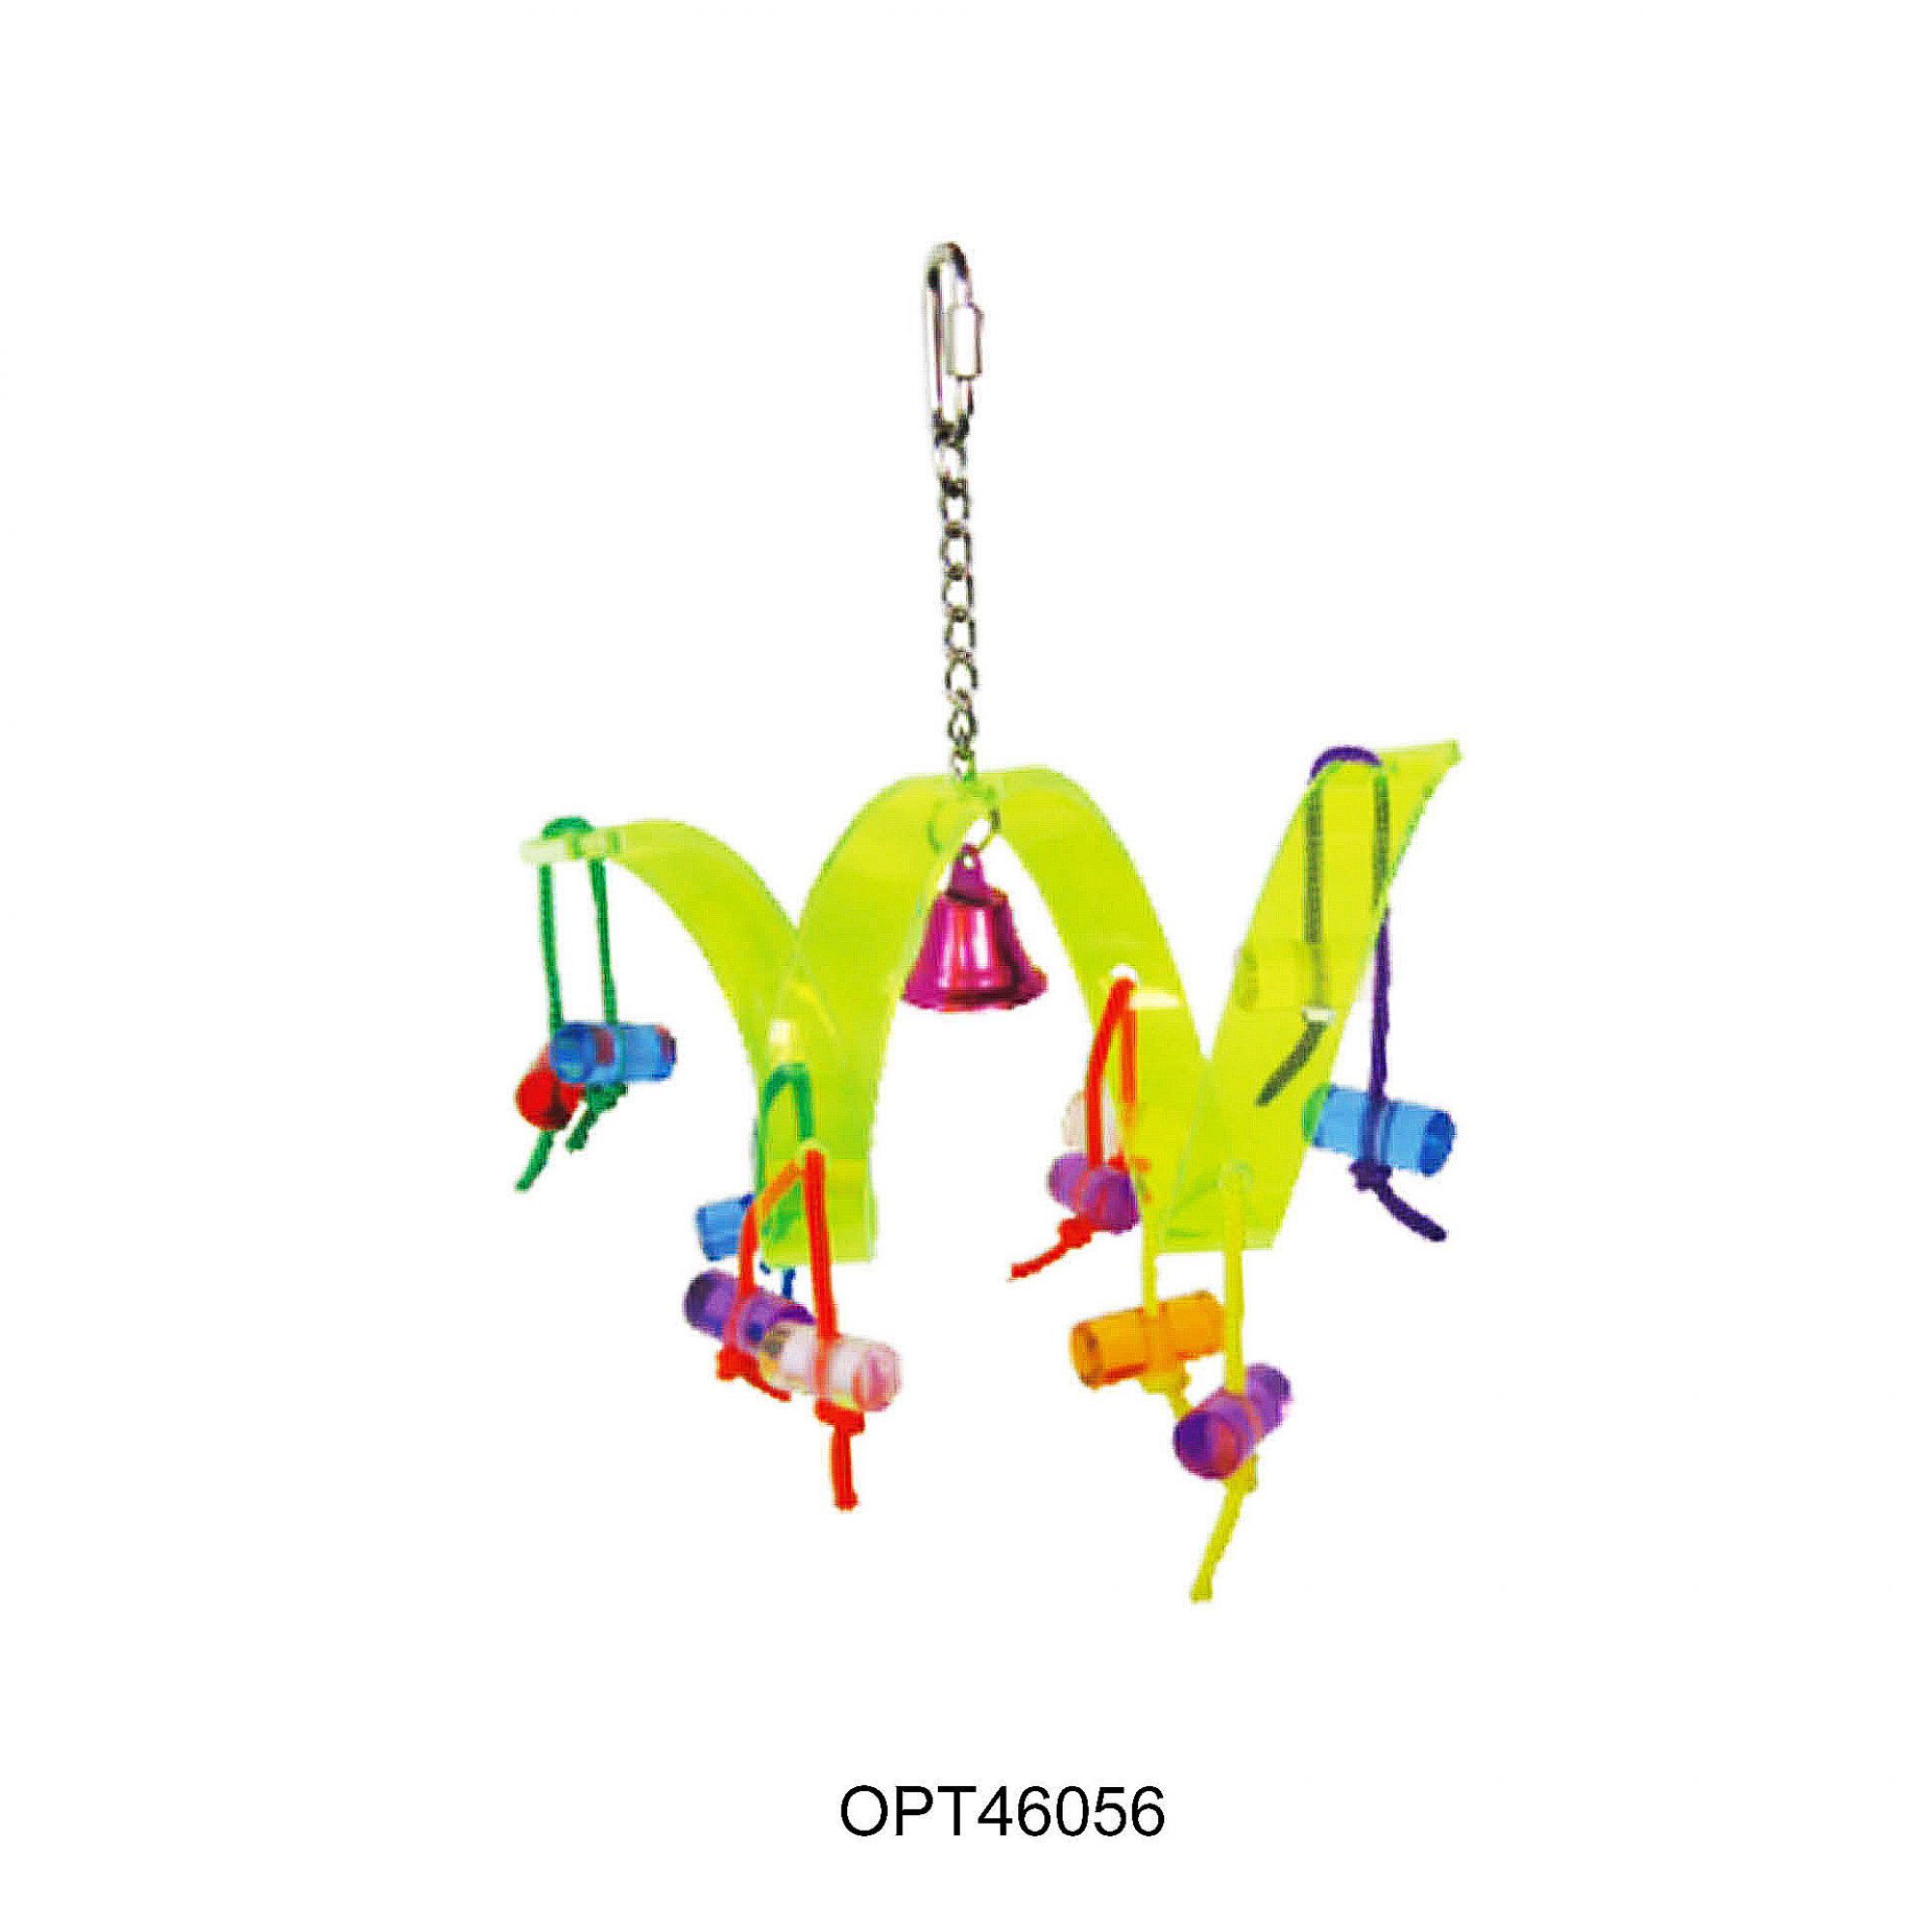 OPSP - 46056 - Bird Toy 29x16cm